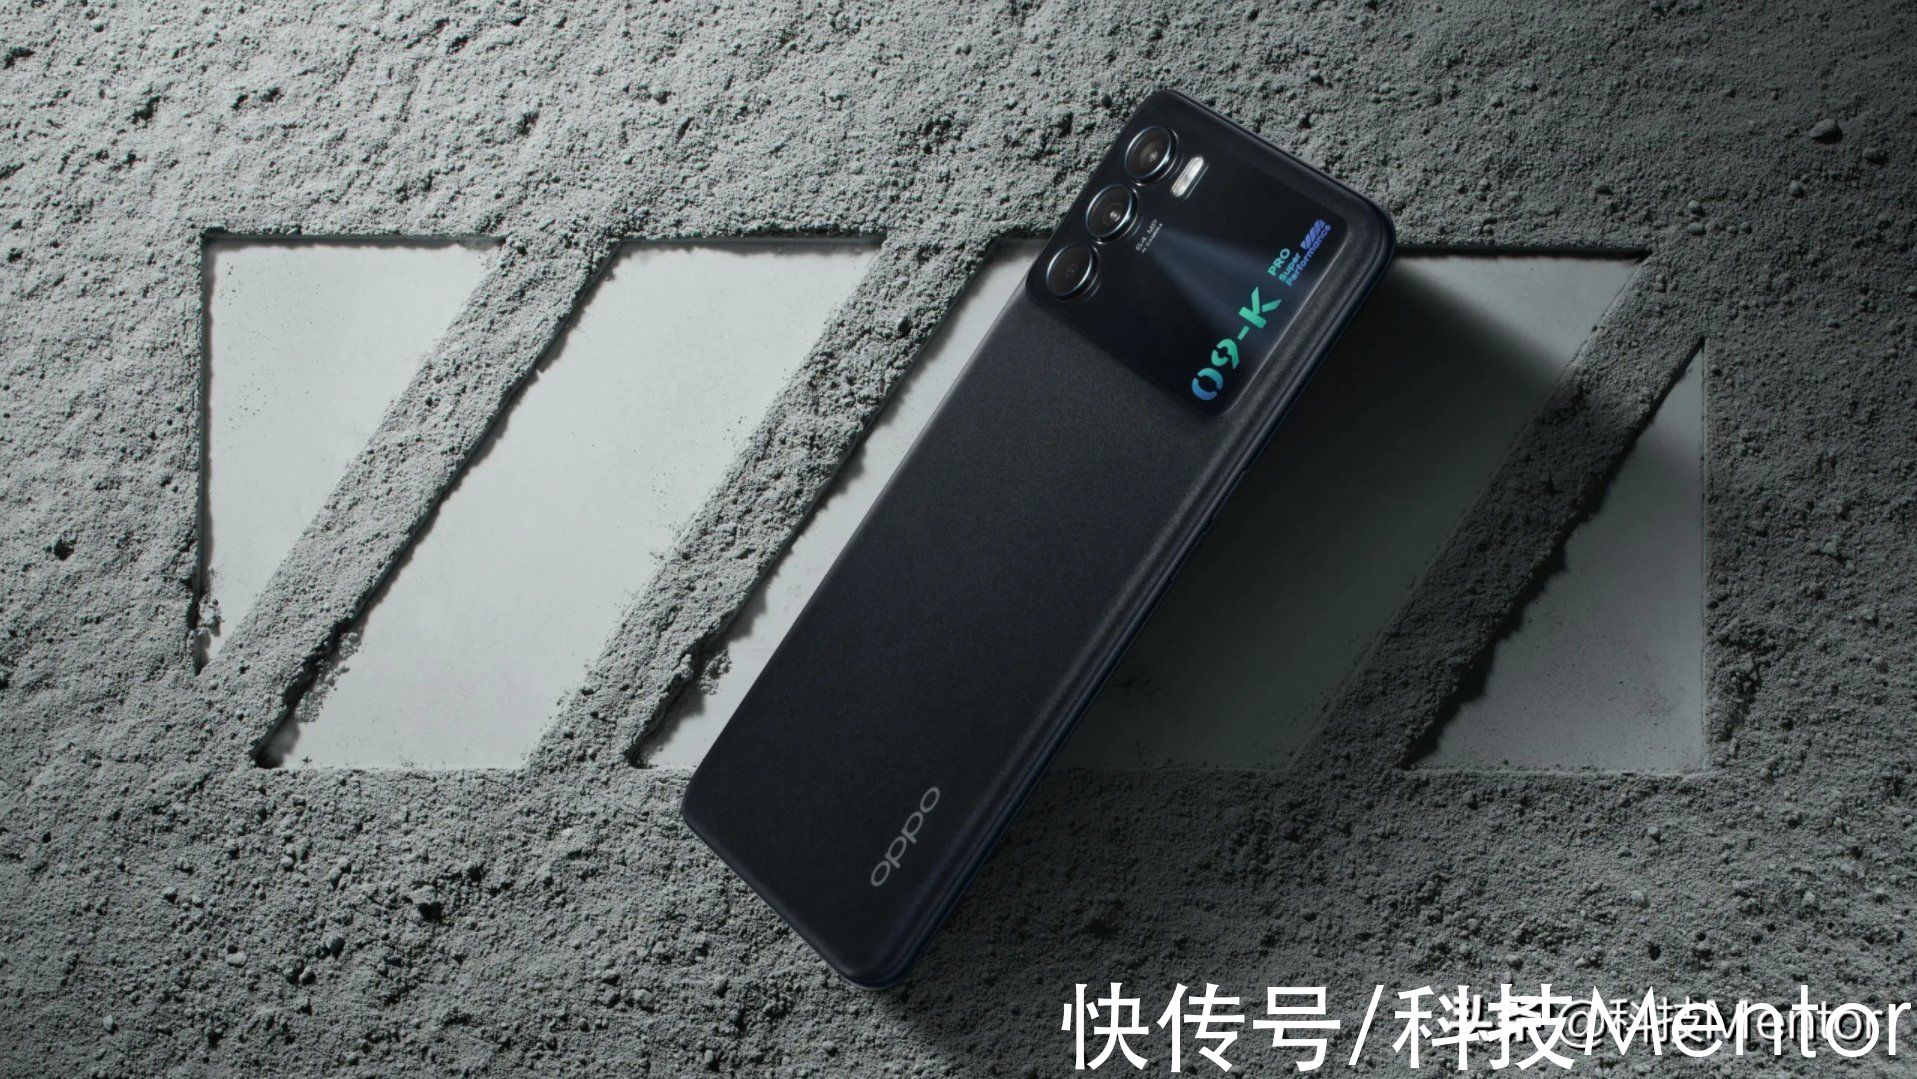 电池容量|OPPO诚意之作，旗舰芯售价2199元，这款上市不久的手机值得买吗？